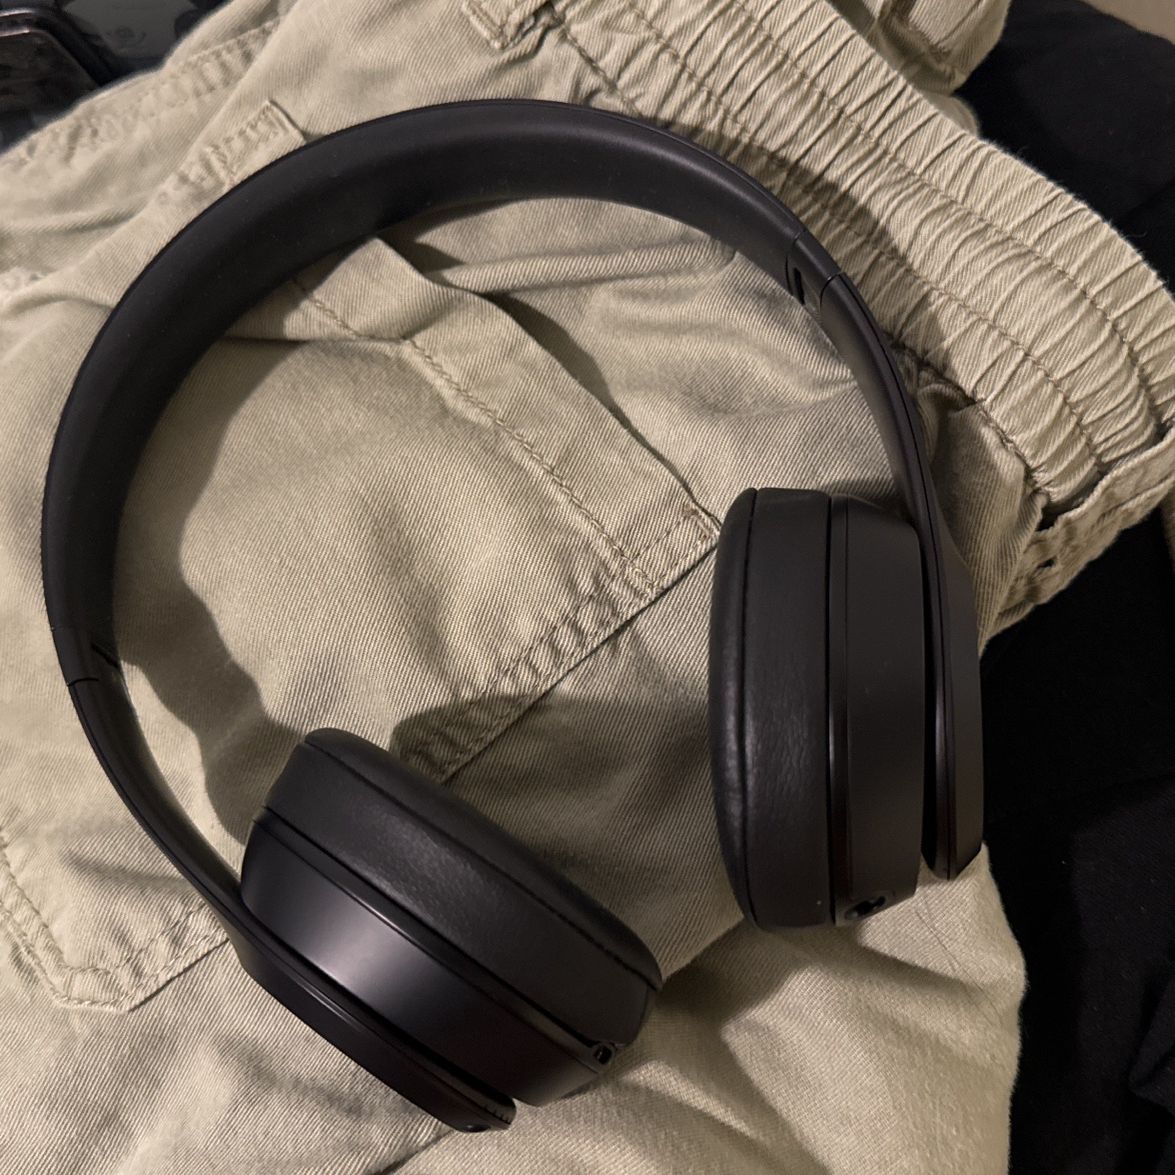 Beats - Solo 3 Wireless On-Ear Headphones - Matte Black